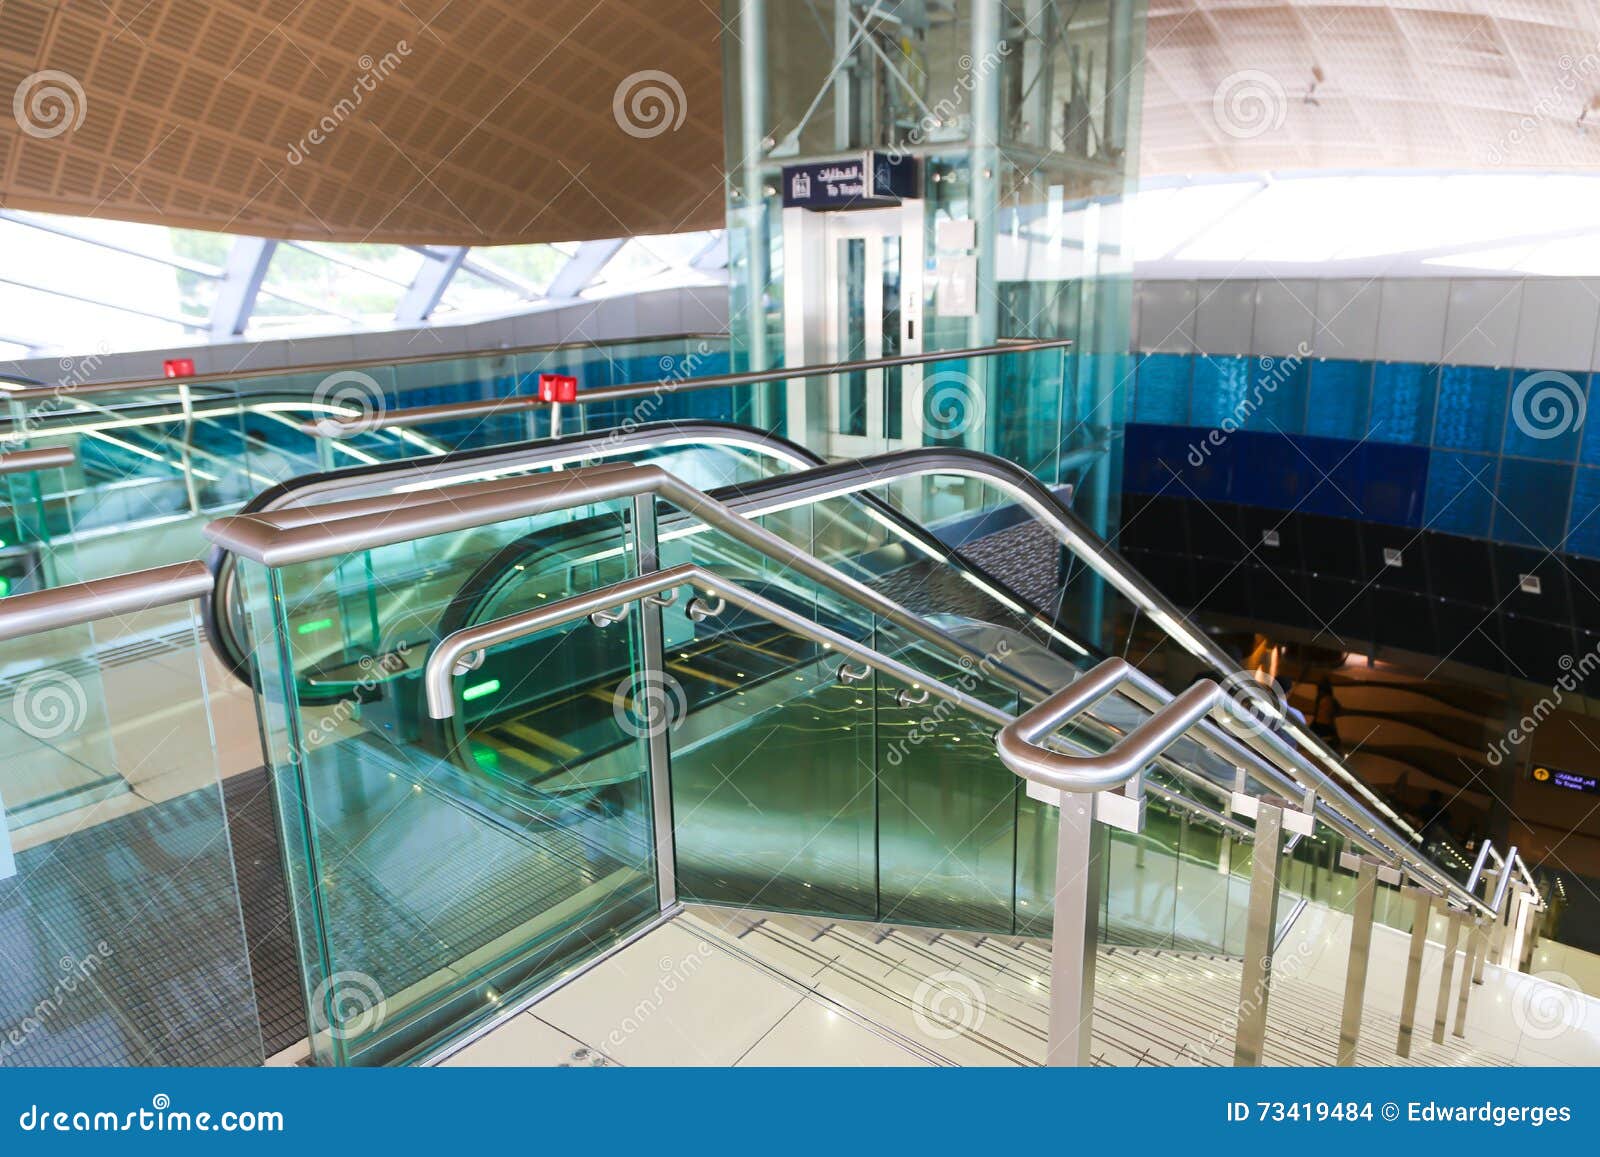 Metro Dubai stockfoto. Bild von dubai, metro 73419484